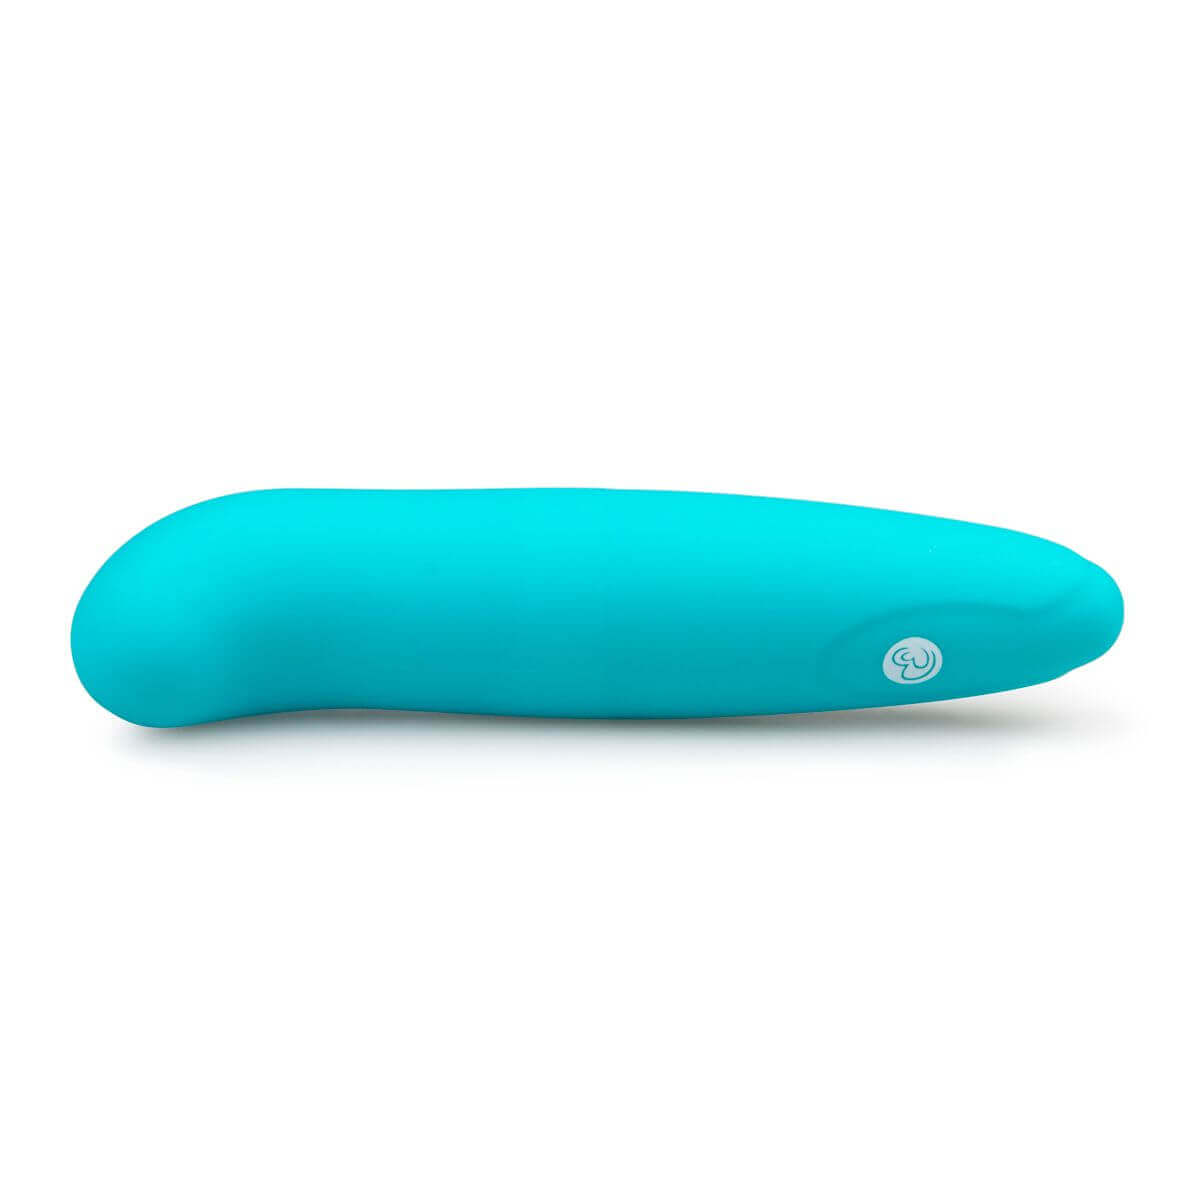 EasyToys Mini G-Vibe - G-pont vibrátor (kék) G-pont izgató kép